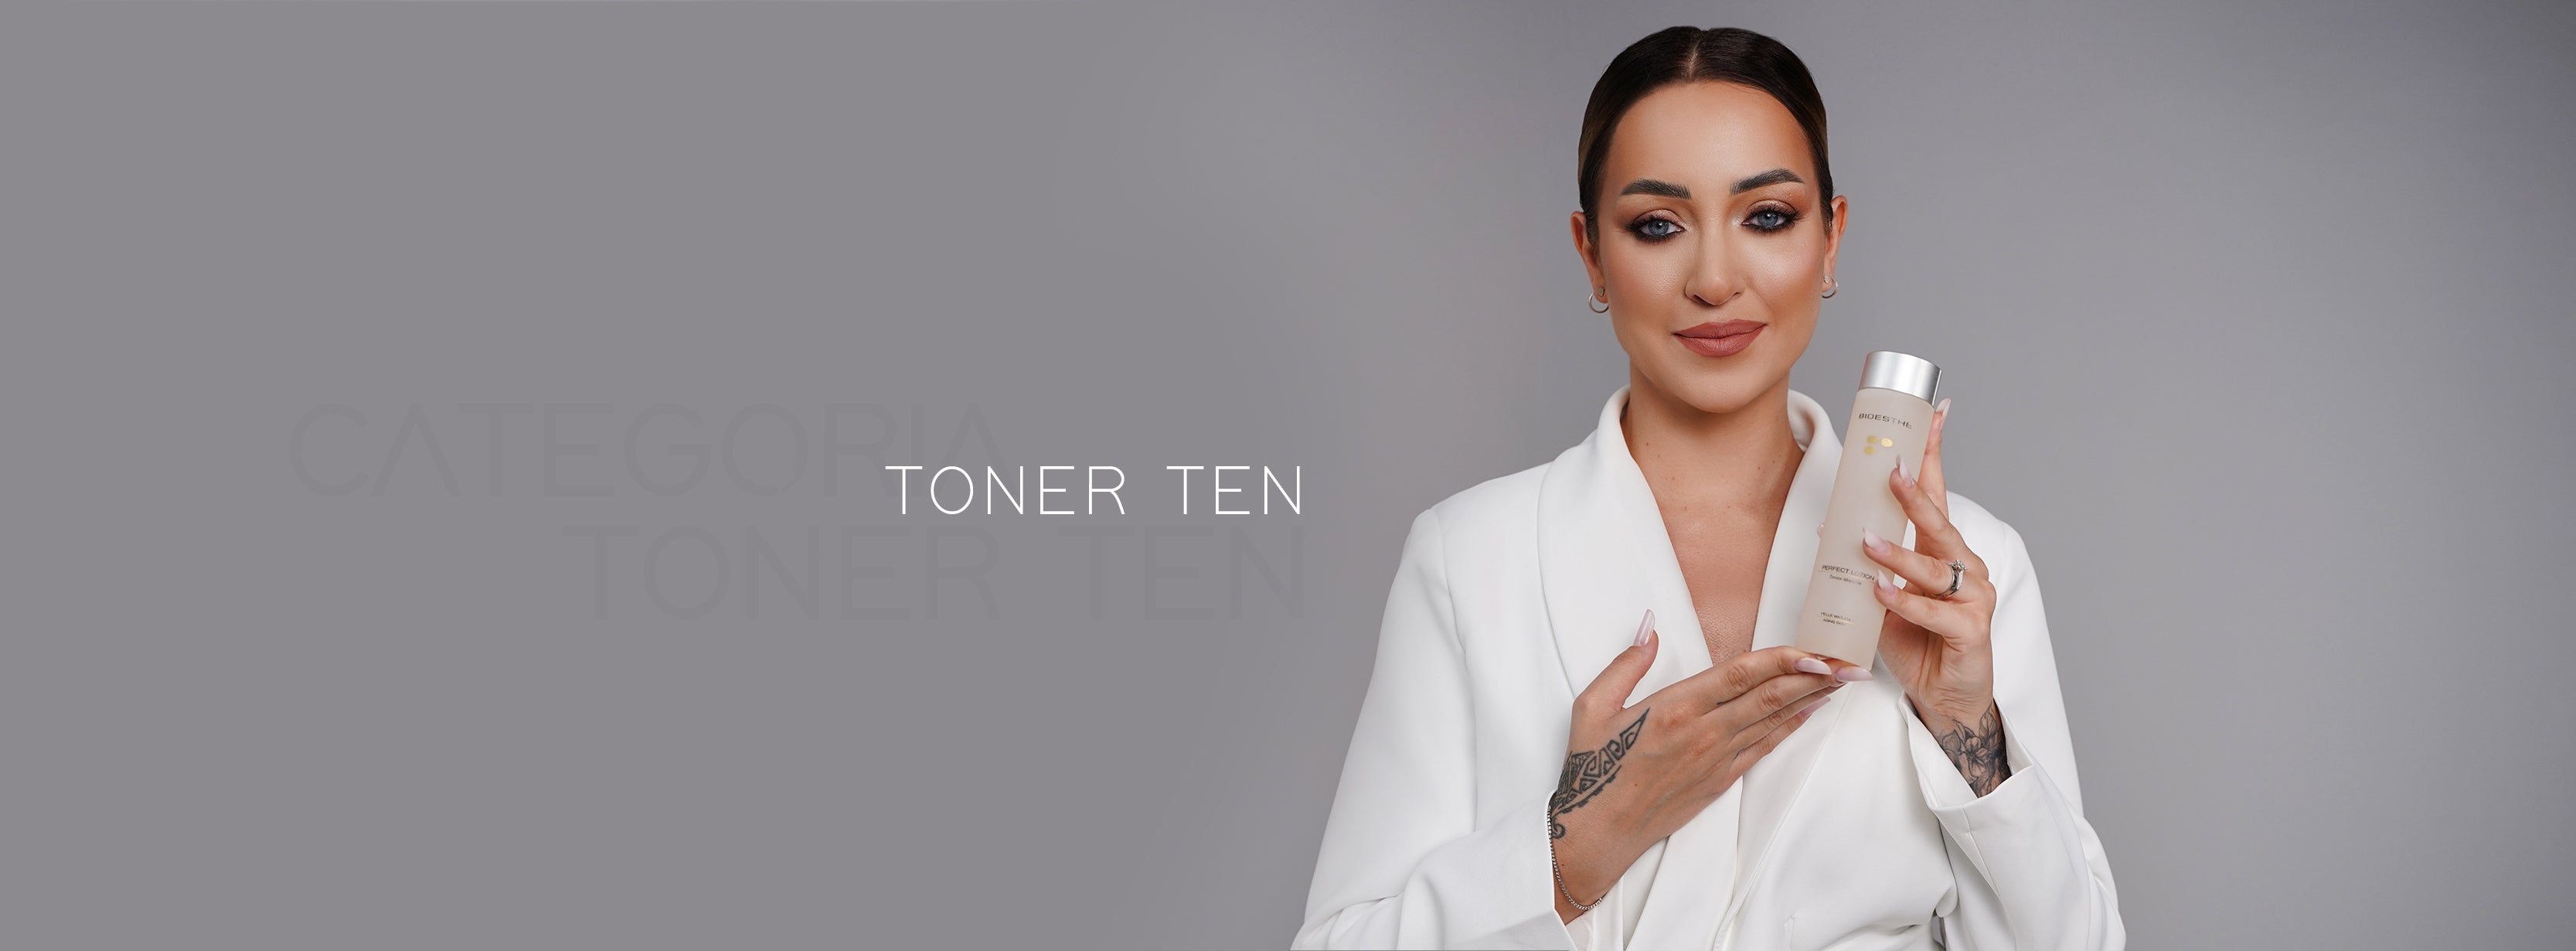 Toner Ten